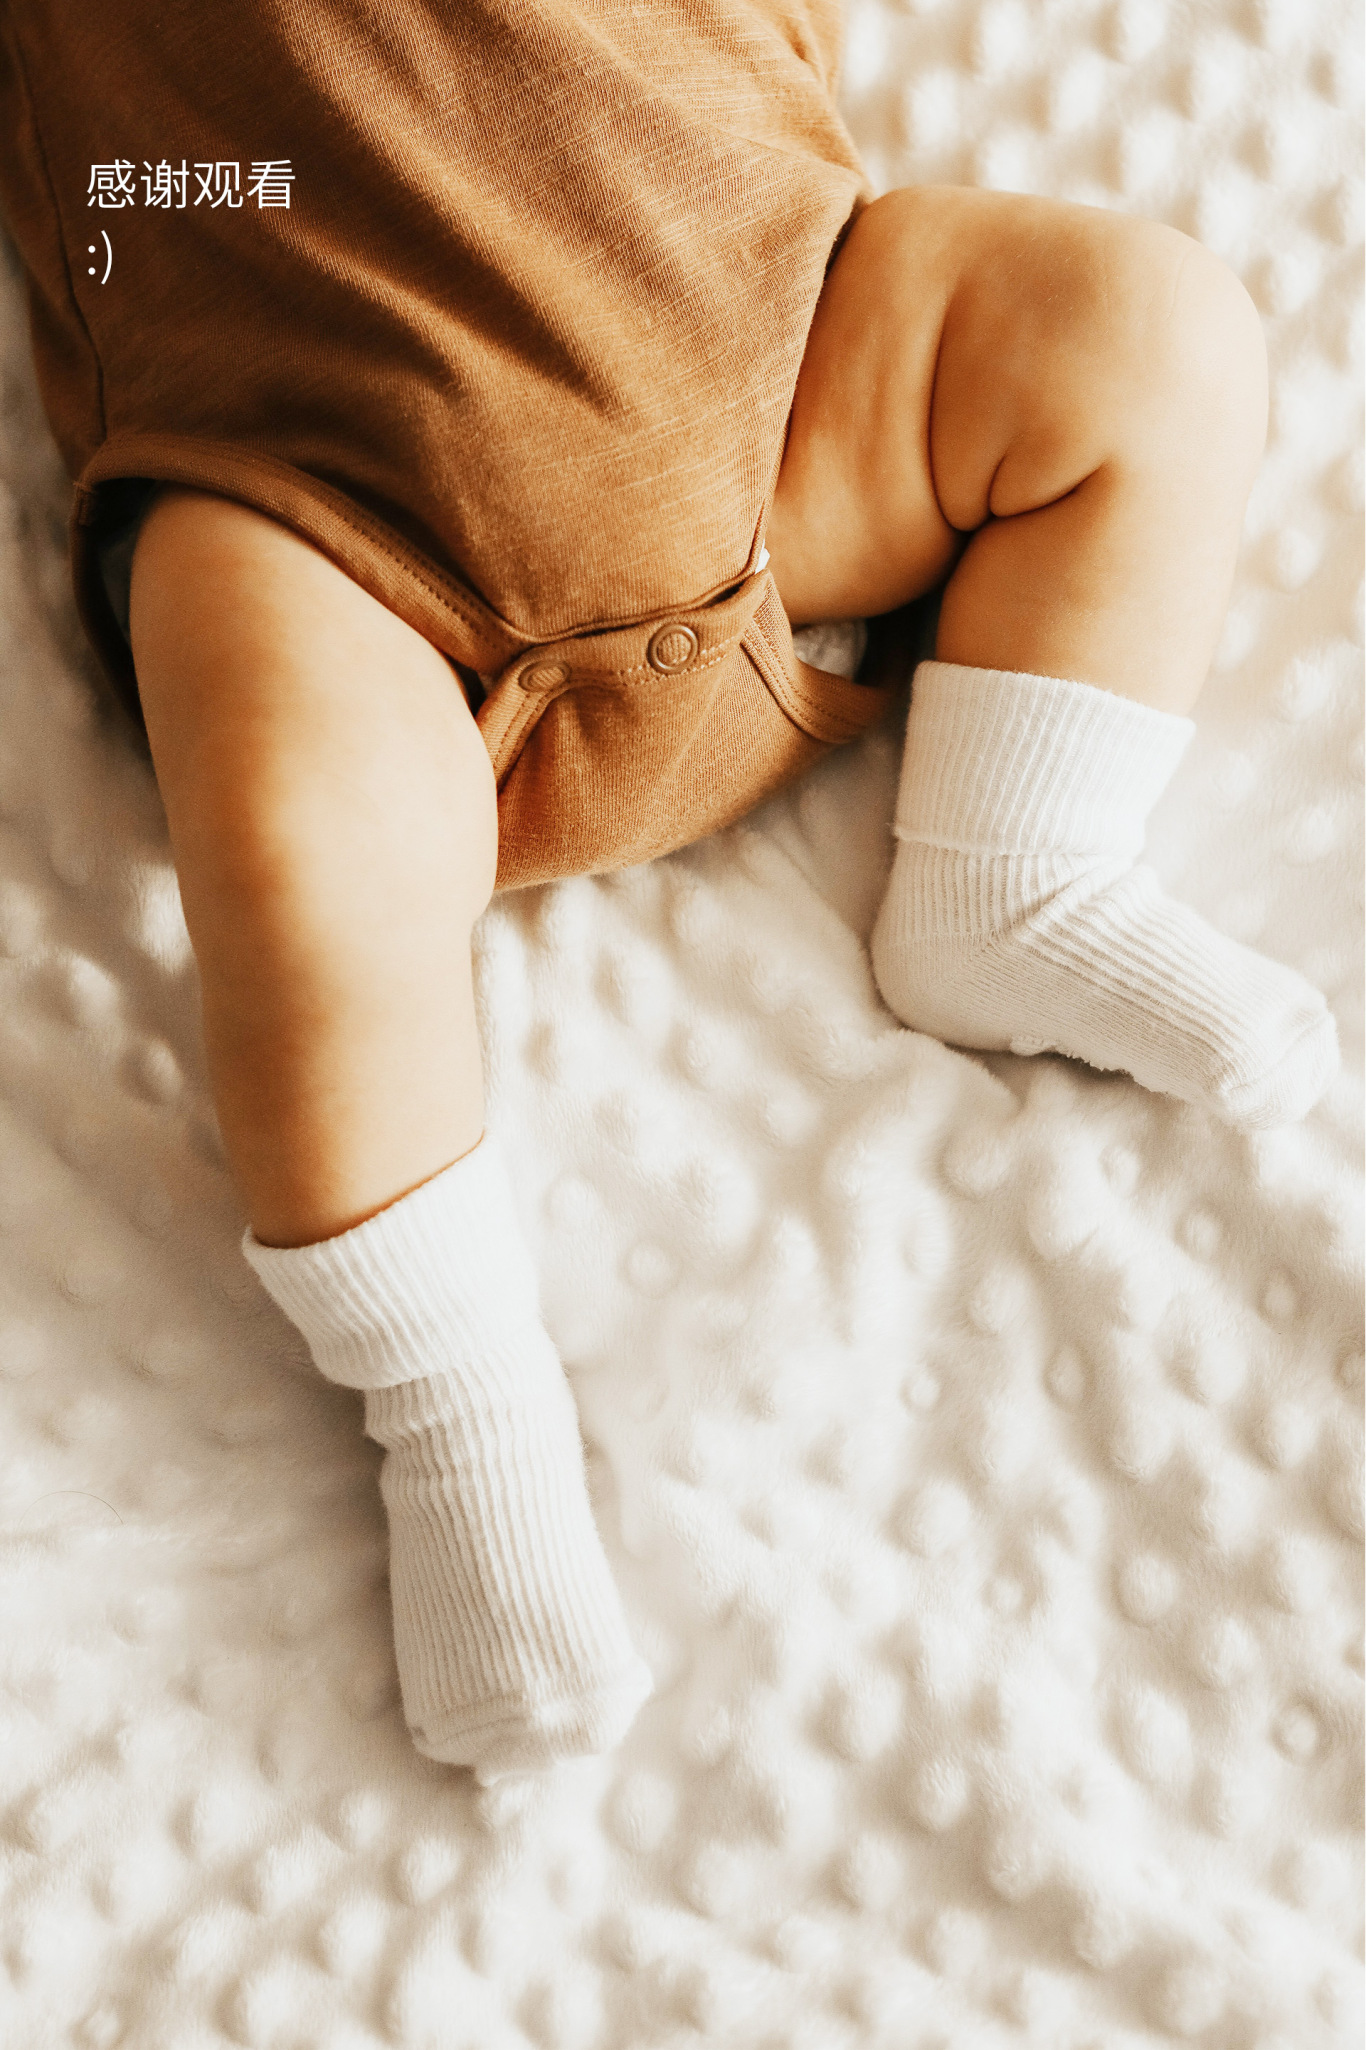 「Siebarelo」婴幼儿乳胶枕系列包装图13